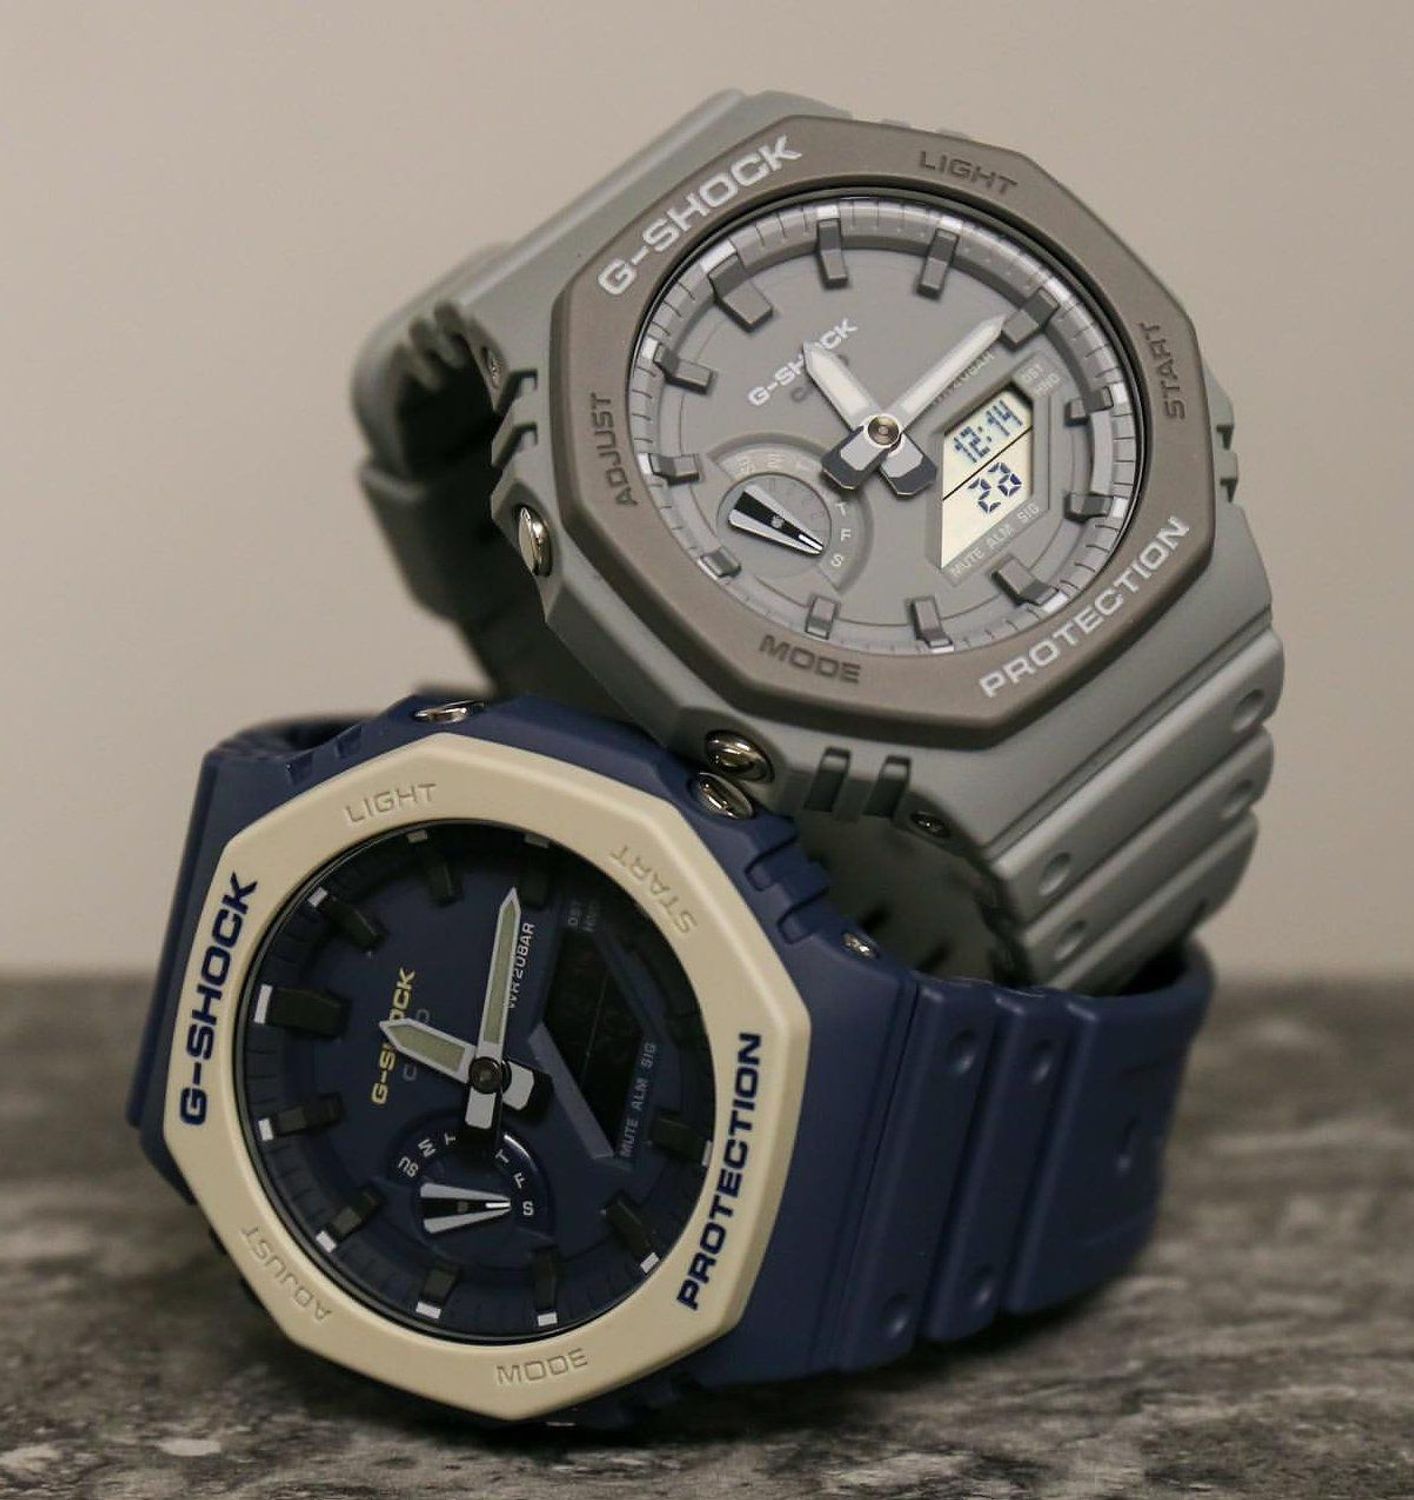 CASIO G-SHOCK GA 2110 ETカシオーク グレー - 腕時計(デジタル)